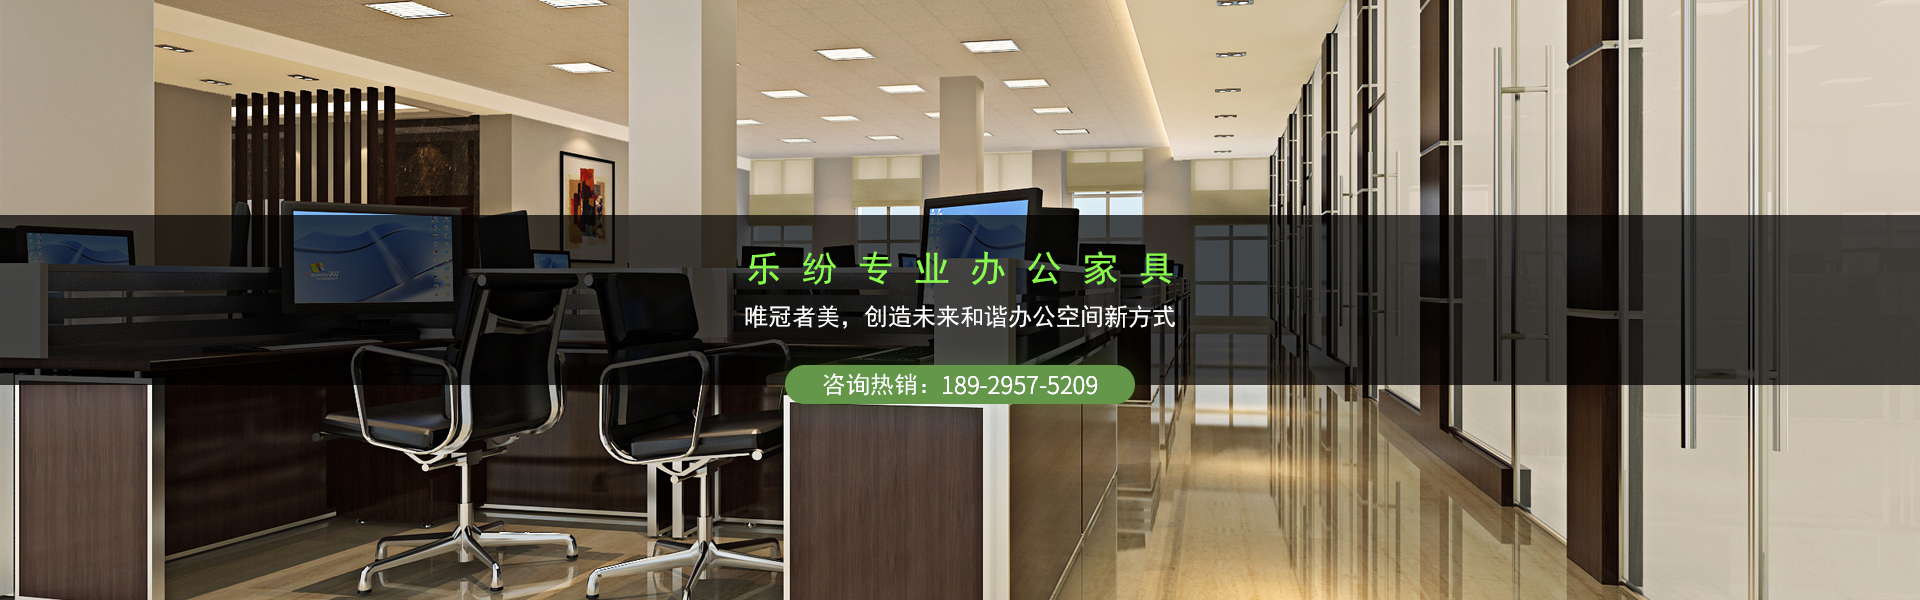 广州乐纷家具是一家专业办公室家具生产厂家